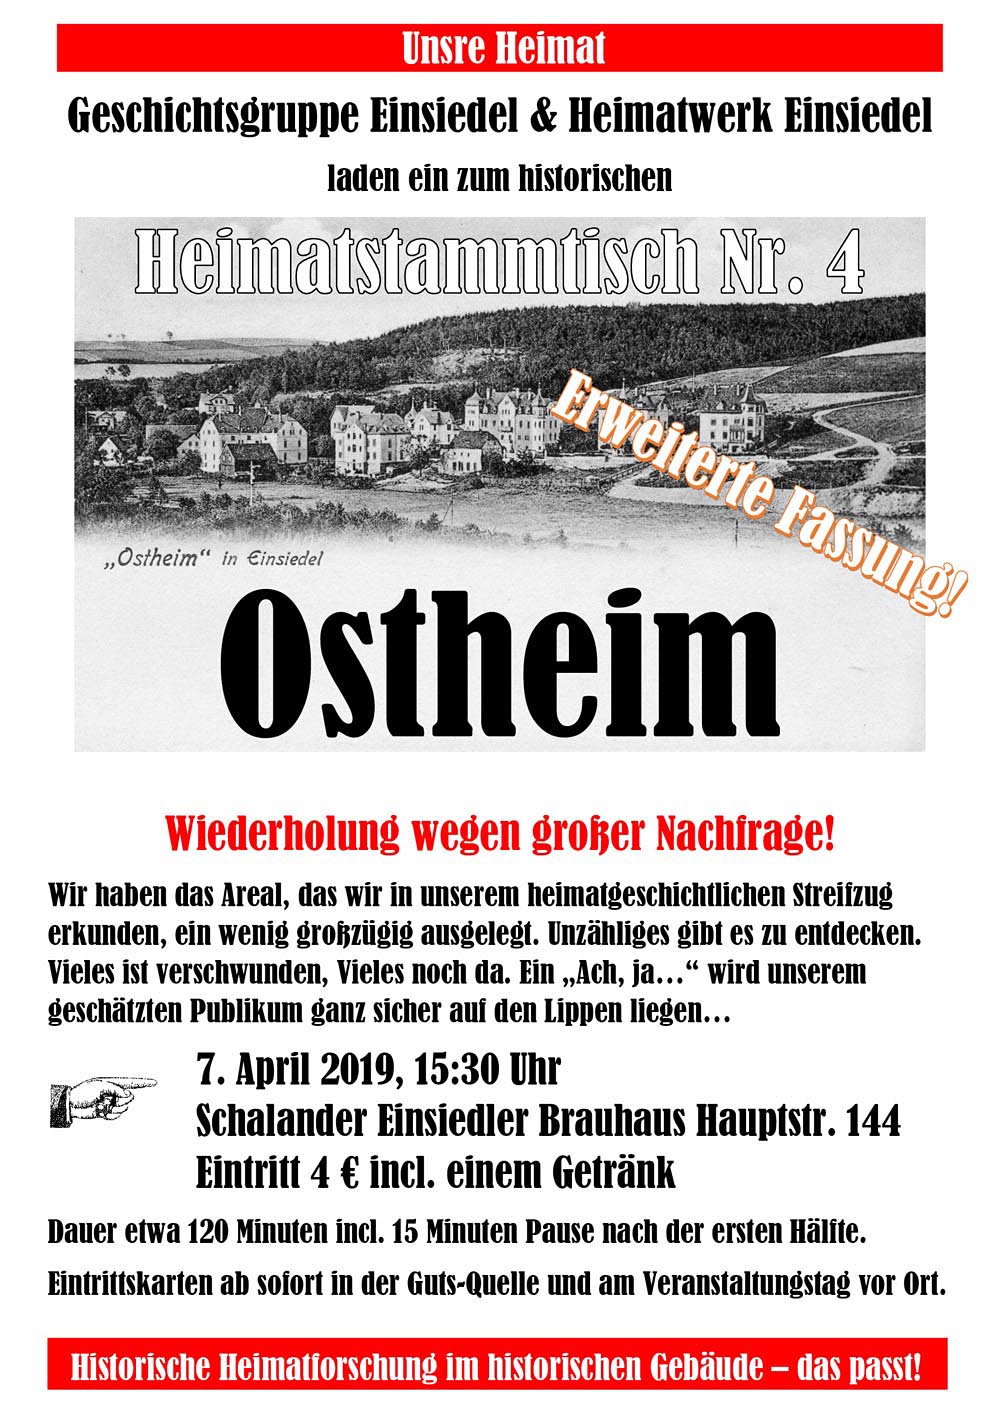 Heimatstammtisch Einsiedel Nr. 4 Ostheim am 7. April 2019 im Schalander des Einsiedler Brauhauses